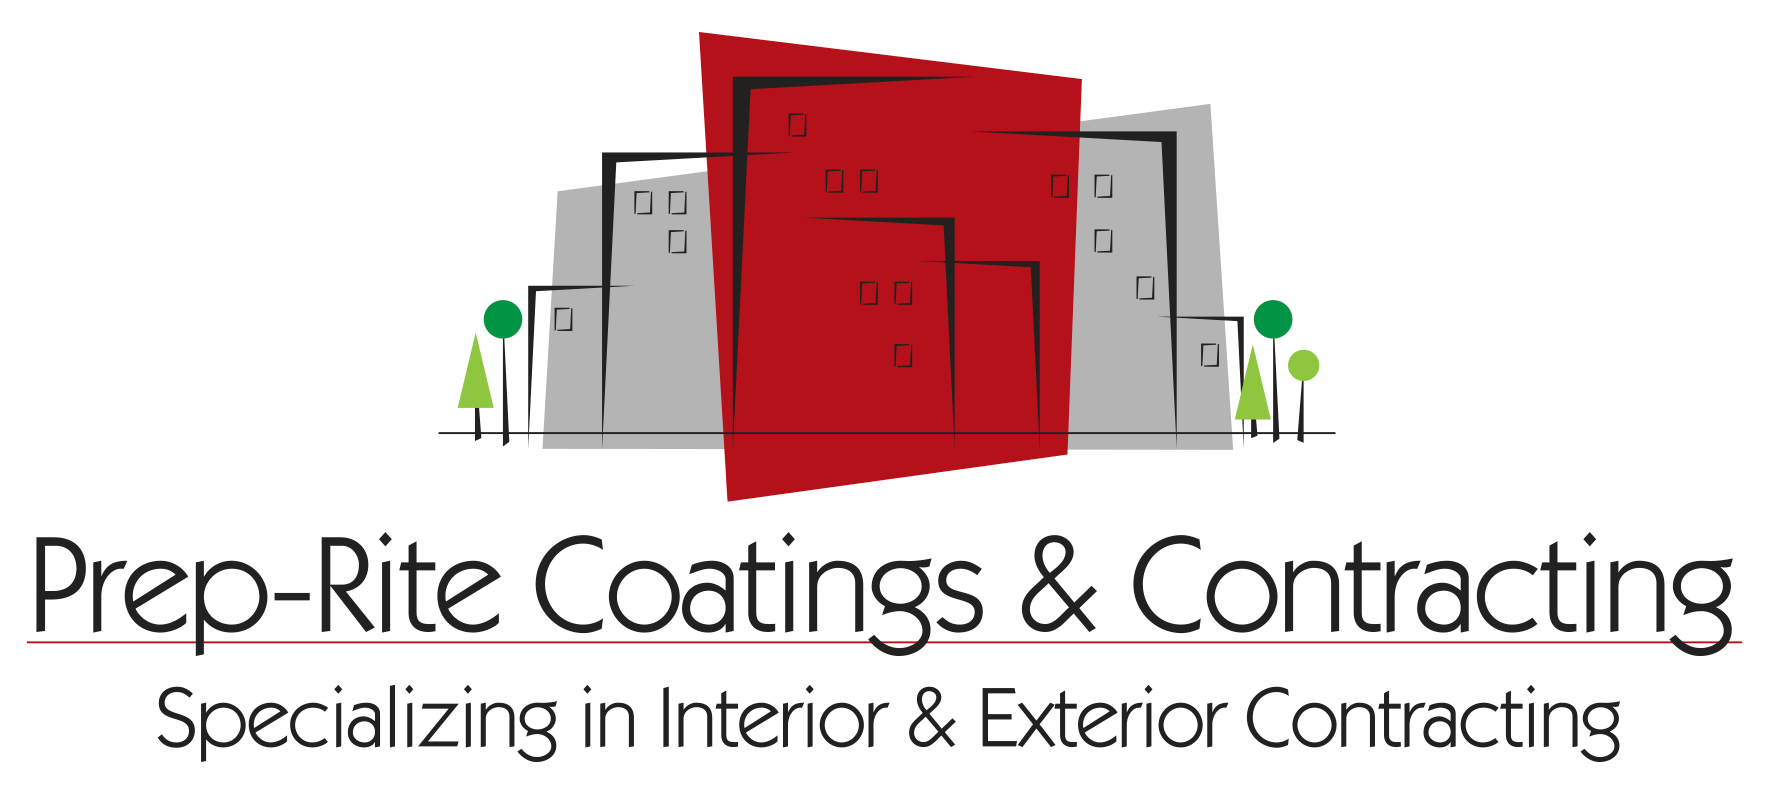 Prep-Rite Coatings & Contracting logo